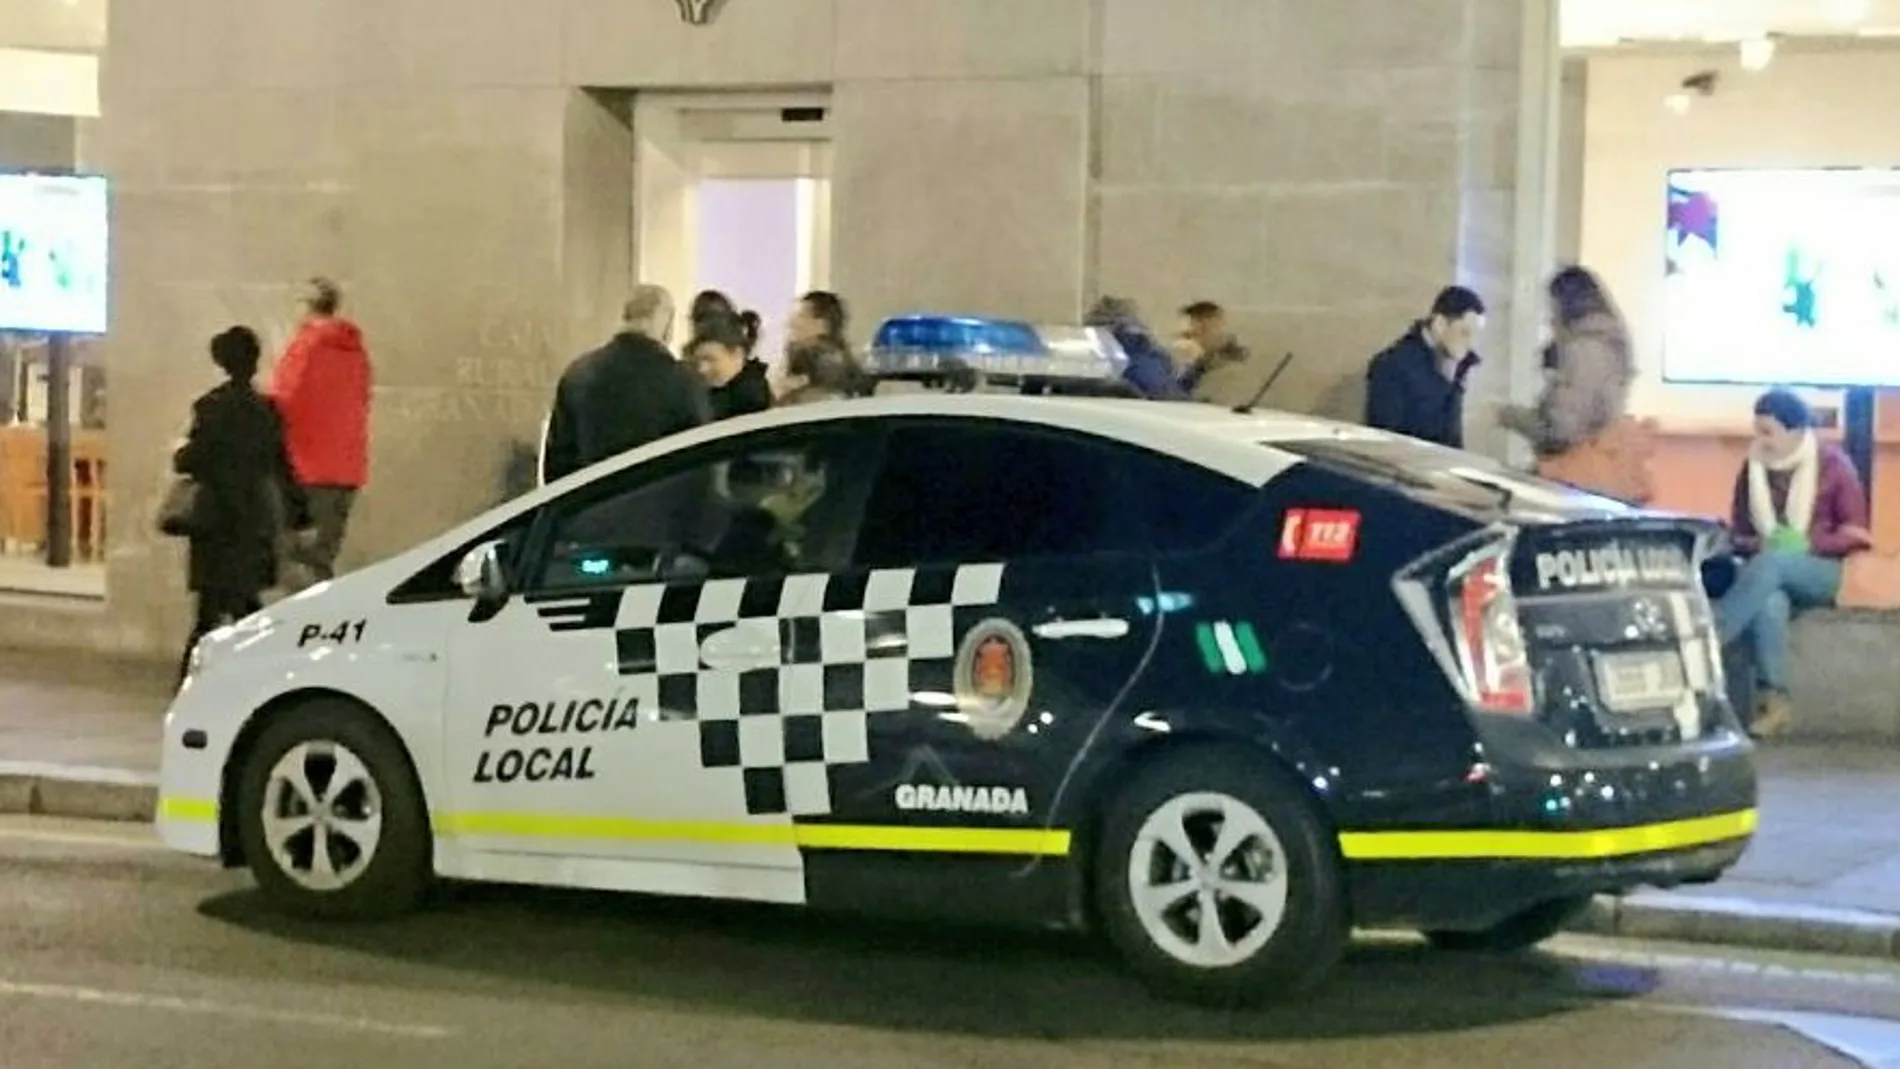 La Policía Local de Granada tuvo que intervenir para disolver el evento